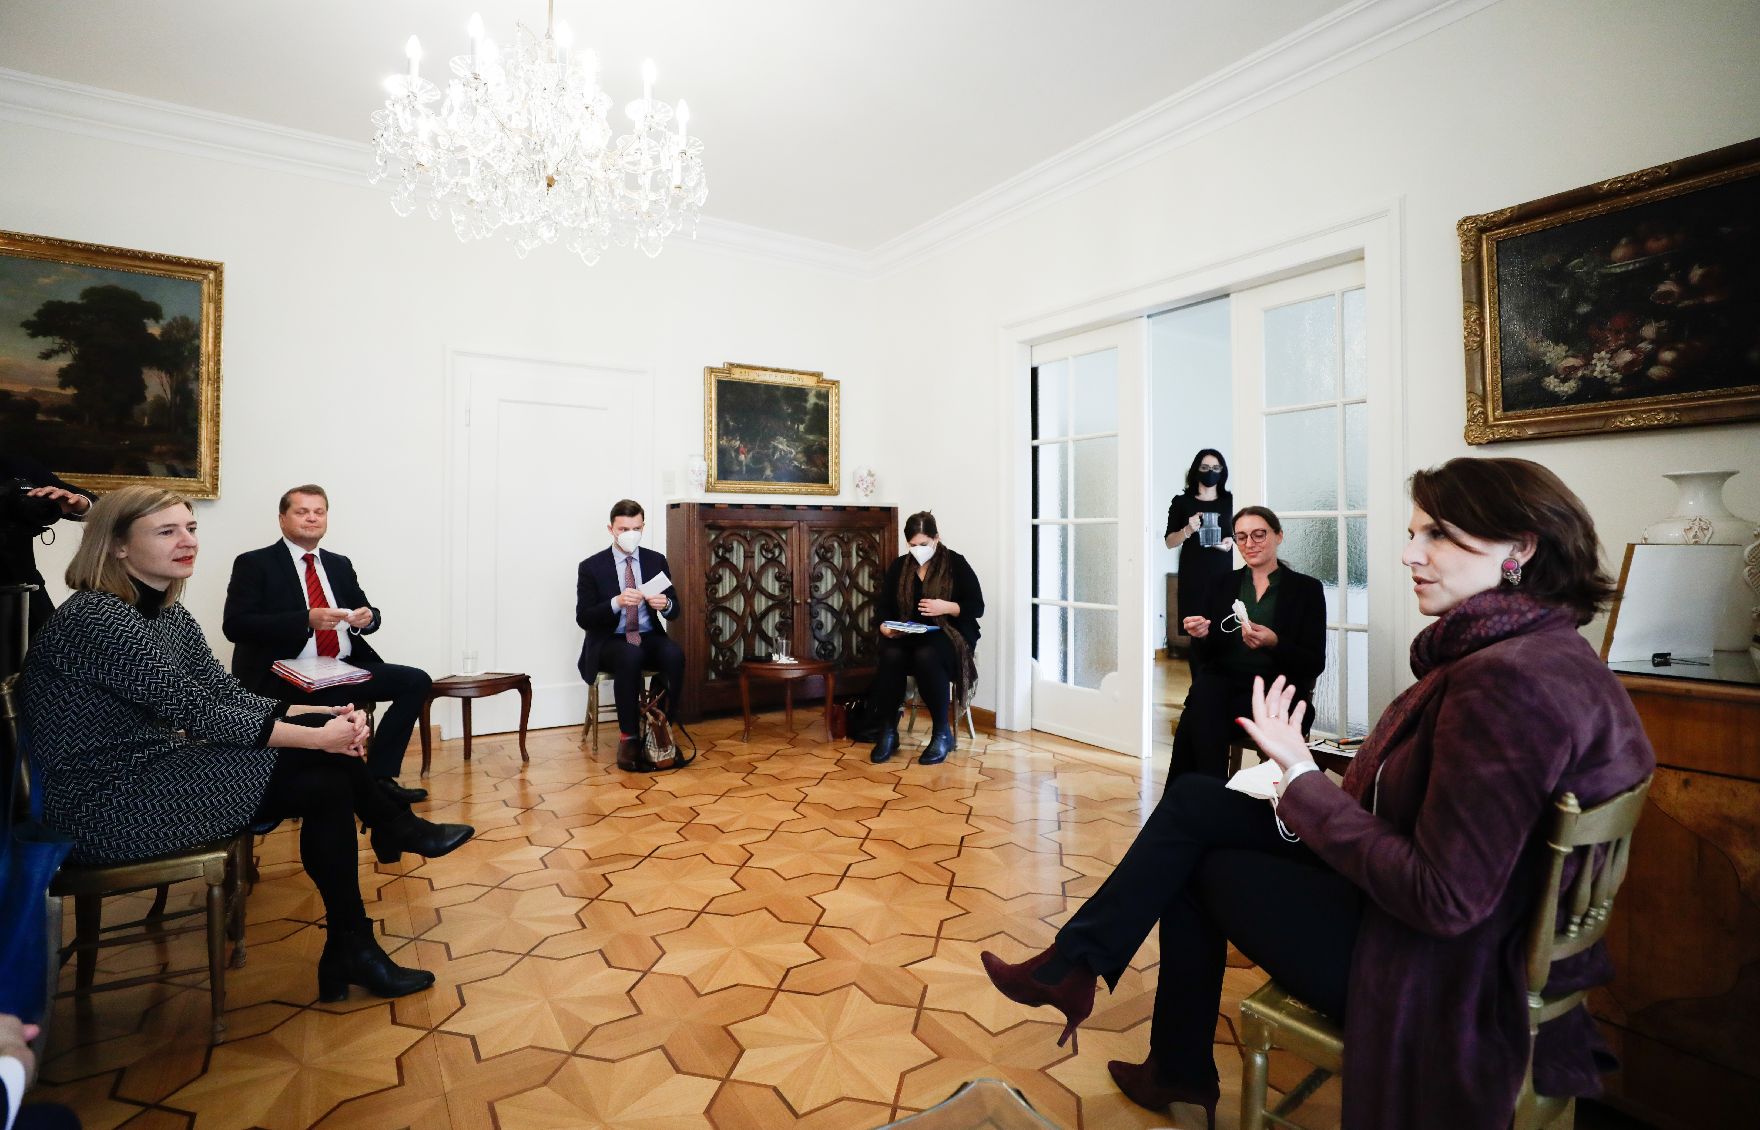 Am 27. Oktober 2020 nahm Bundesministerin Karoline Edtstadler (r.) im Rahmen ihres München Besuchs an einem Gespräch mit Expertinnen zum Thema "Hass im Netz" teil.